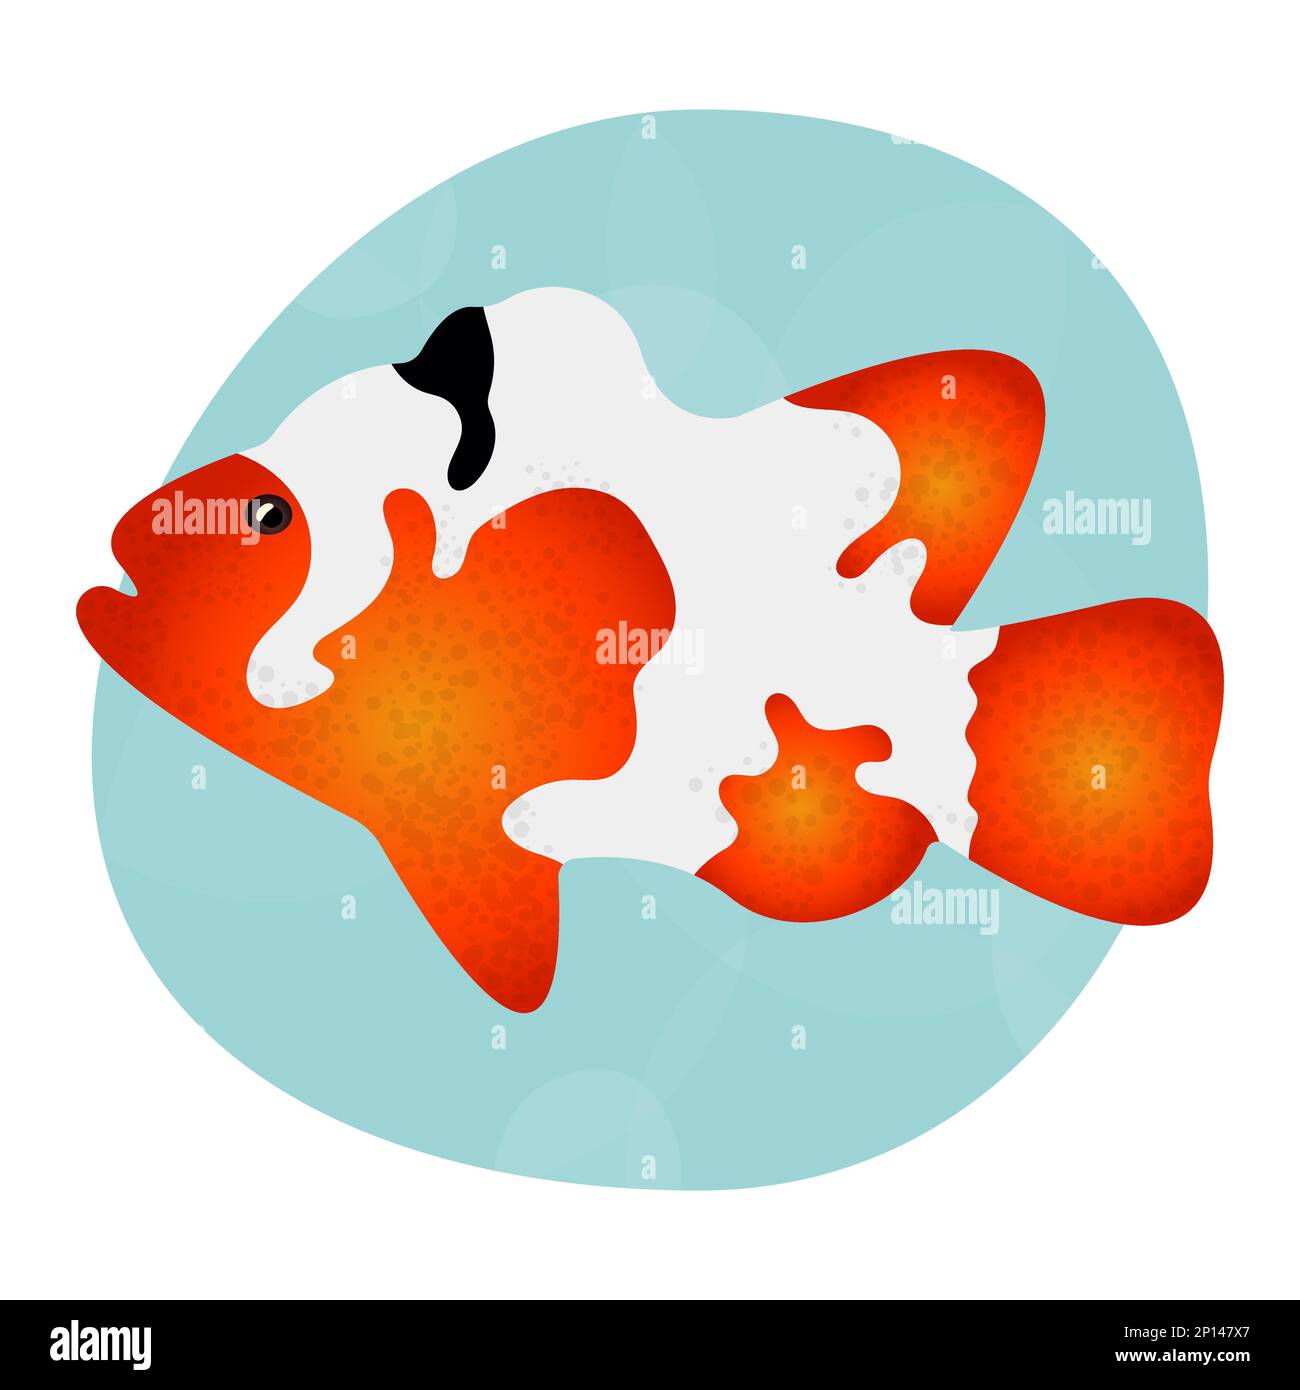 Wunderschöne und helle realistische tropische Fischkarpfen-Koi. Element für das Design von Schildern, Etiketten, Verpackungen. Cooles Muster für Kleidung, Tassen, Teller, Waren. Logo Stock Vektor